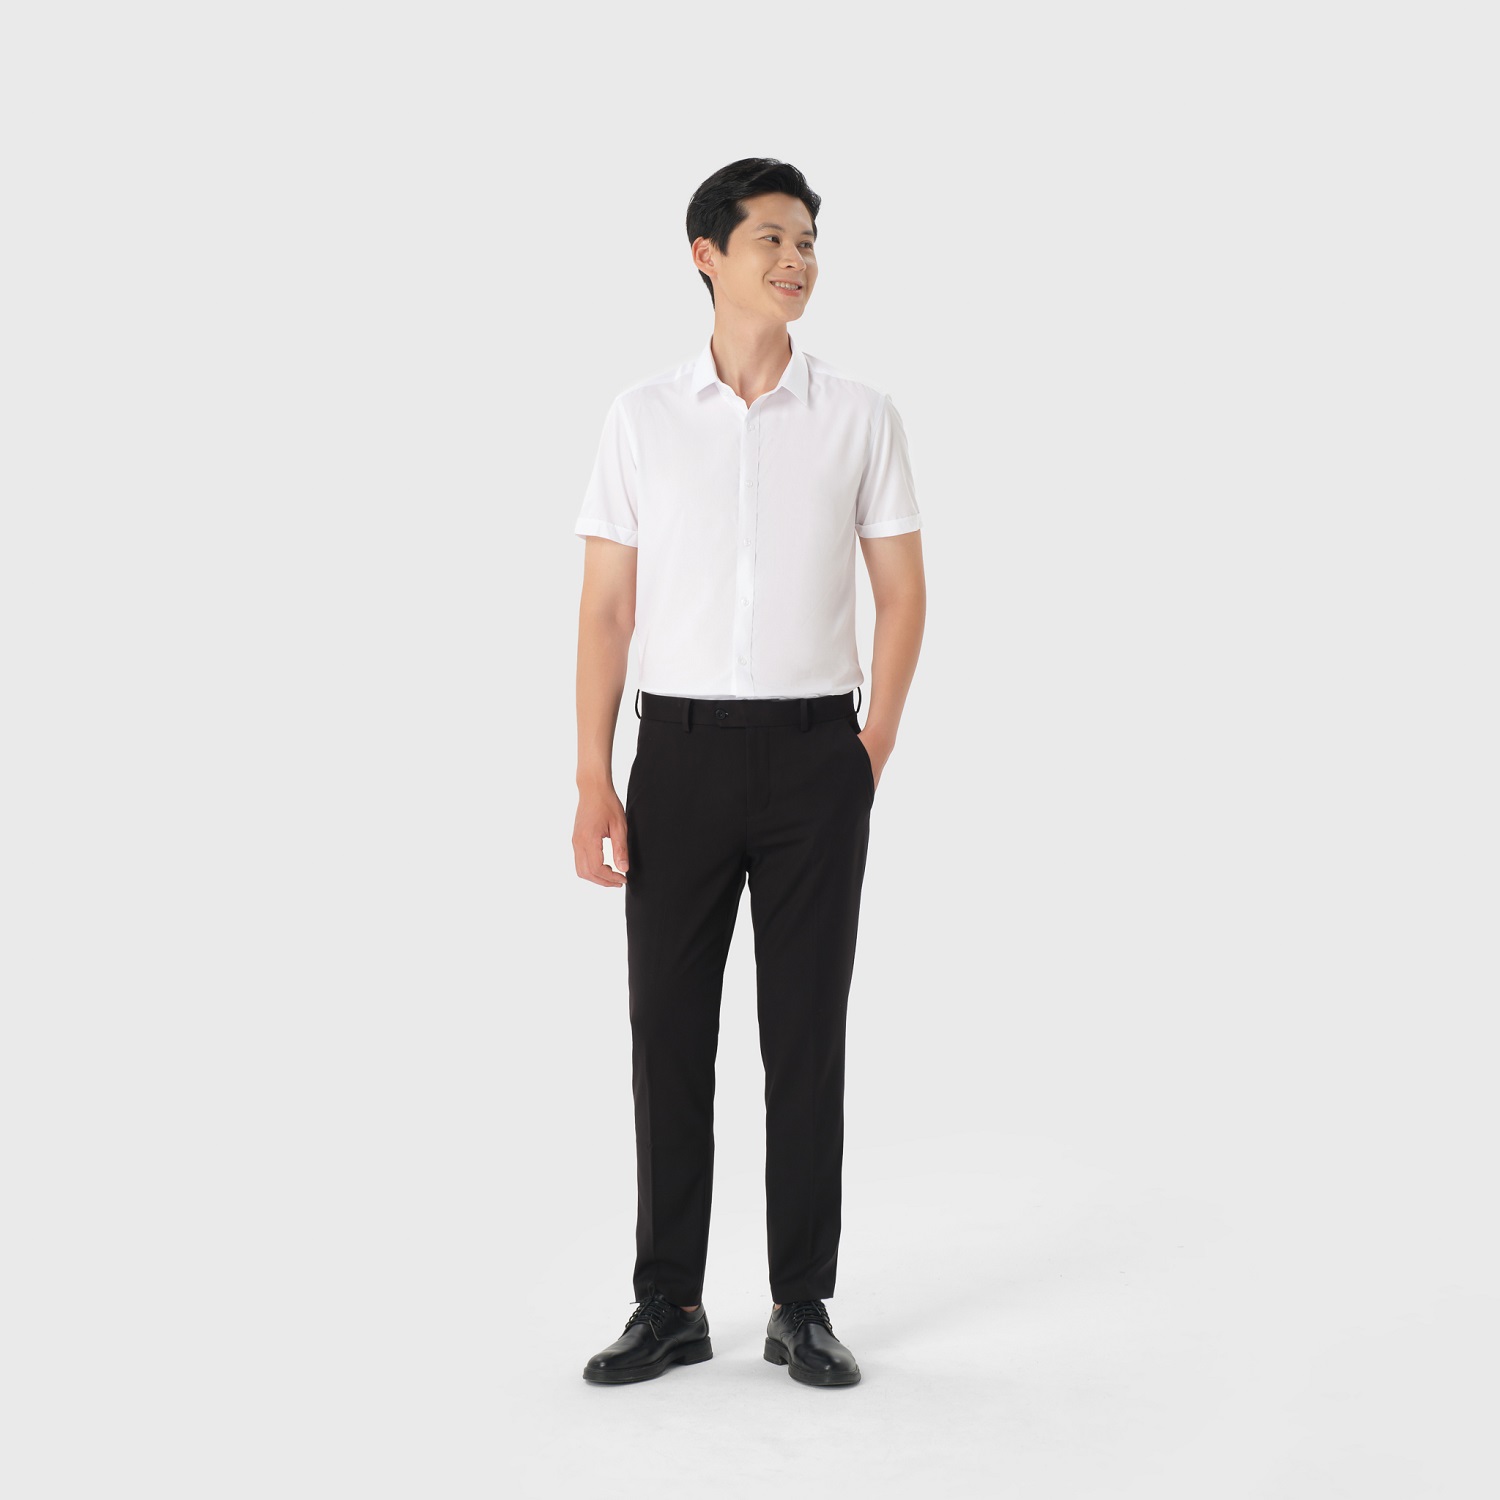 7 thiết kế quần công sở sành điệu nhất 20192020  ELLE Man Việt Nam